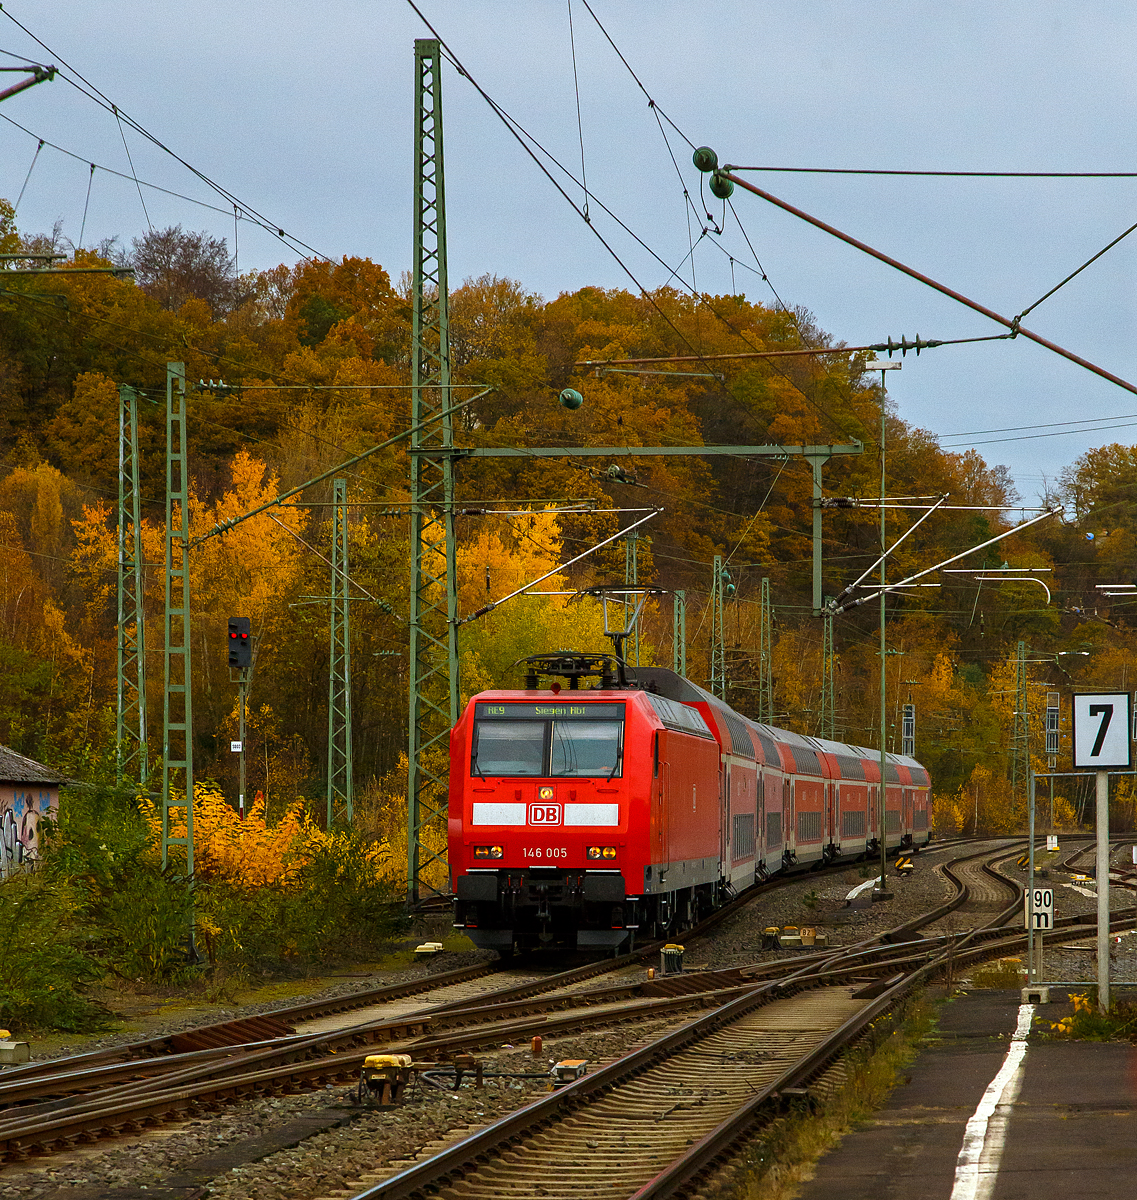 
Die 146 005-4 (91 80 6146 005-4 D-DB) der DB Regio NRW fährt am 15.11.2020, mit dem RE 9 (rsx - Rhein-Sieg-Express) Dürren - Köln - Siegen, in den Bahnhof Betzdorf/Sieg ein. 

Nochmals einen lieben Gruß an den netten Lokführer zurück. 
